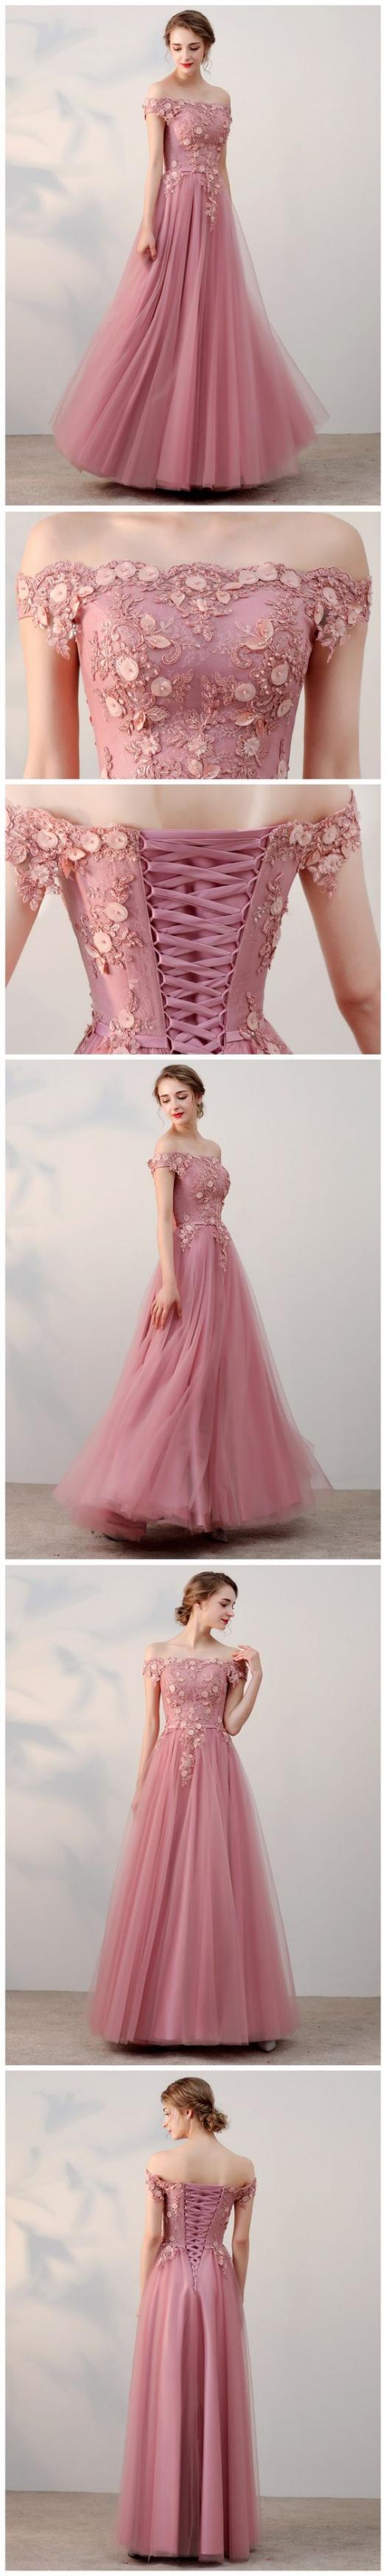 Dark Pink Off Shoulder Tulle Long Formal Gowns, Applique Handmade Evening Dresses, Prom Dress 2018